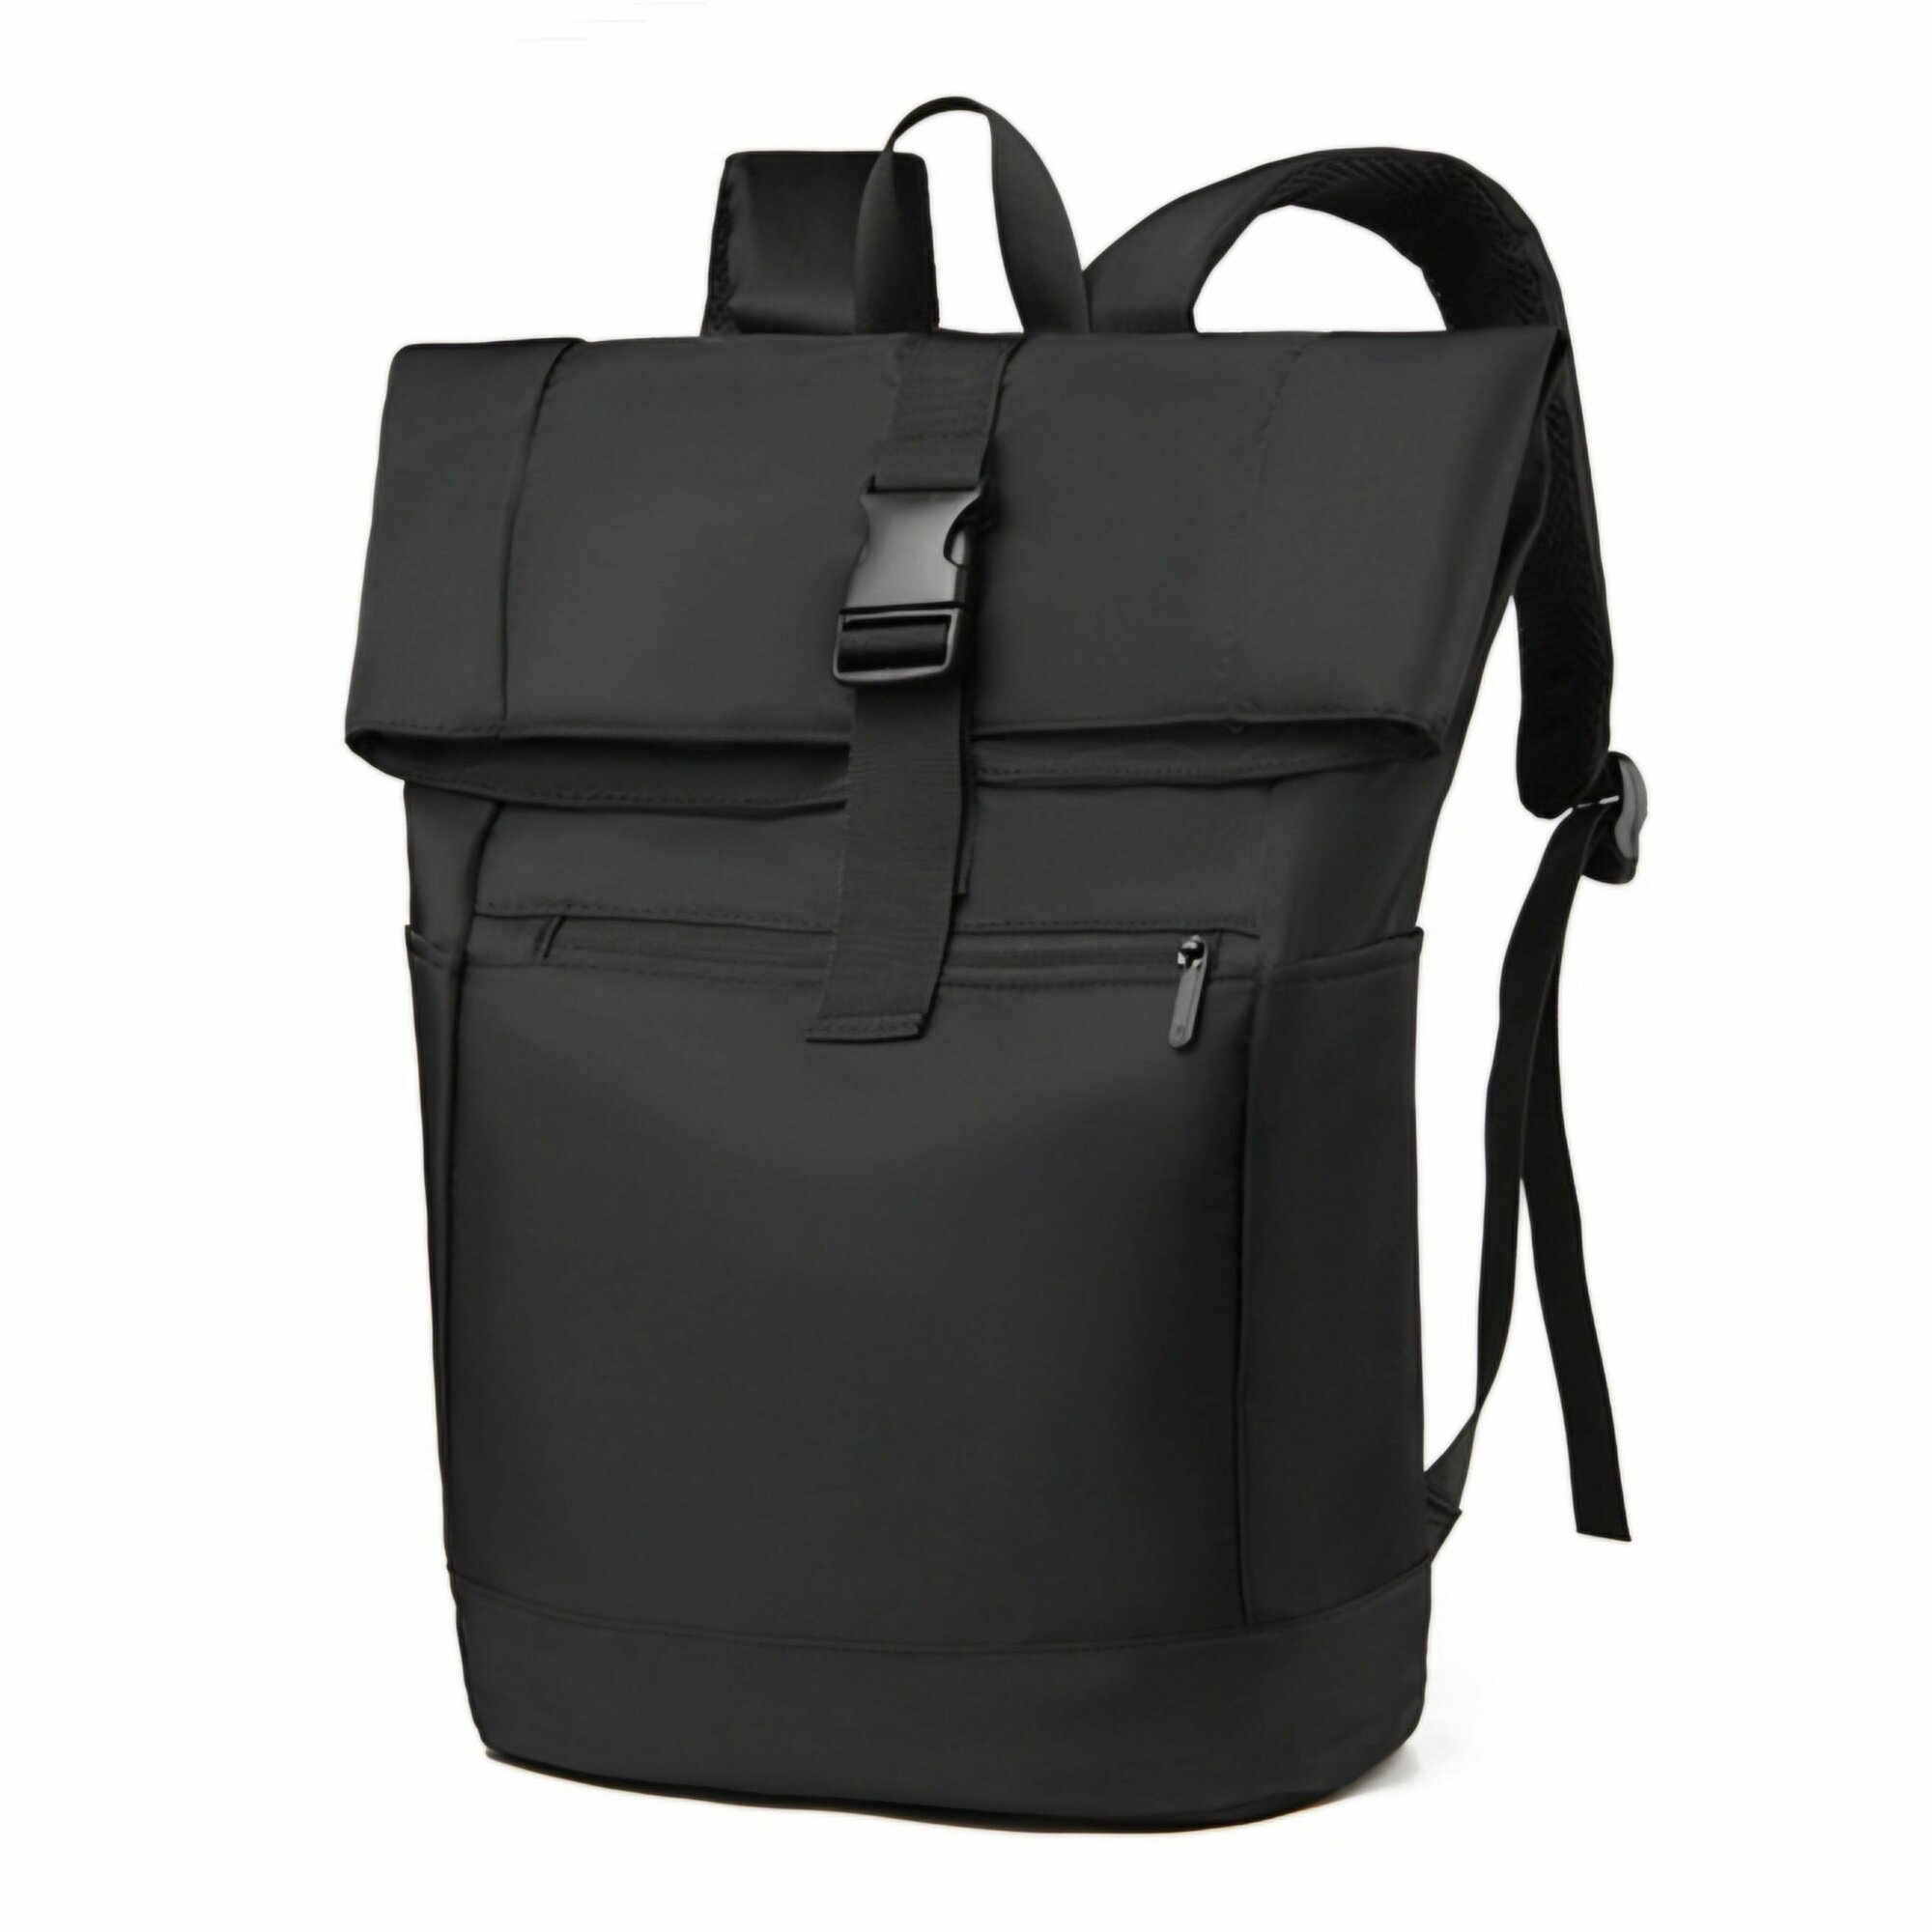 Стильный городской рюкзак с возможностью увеличения объема и отделением для ноутбука 15.6 дюйма